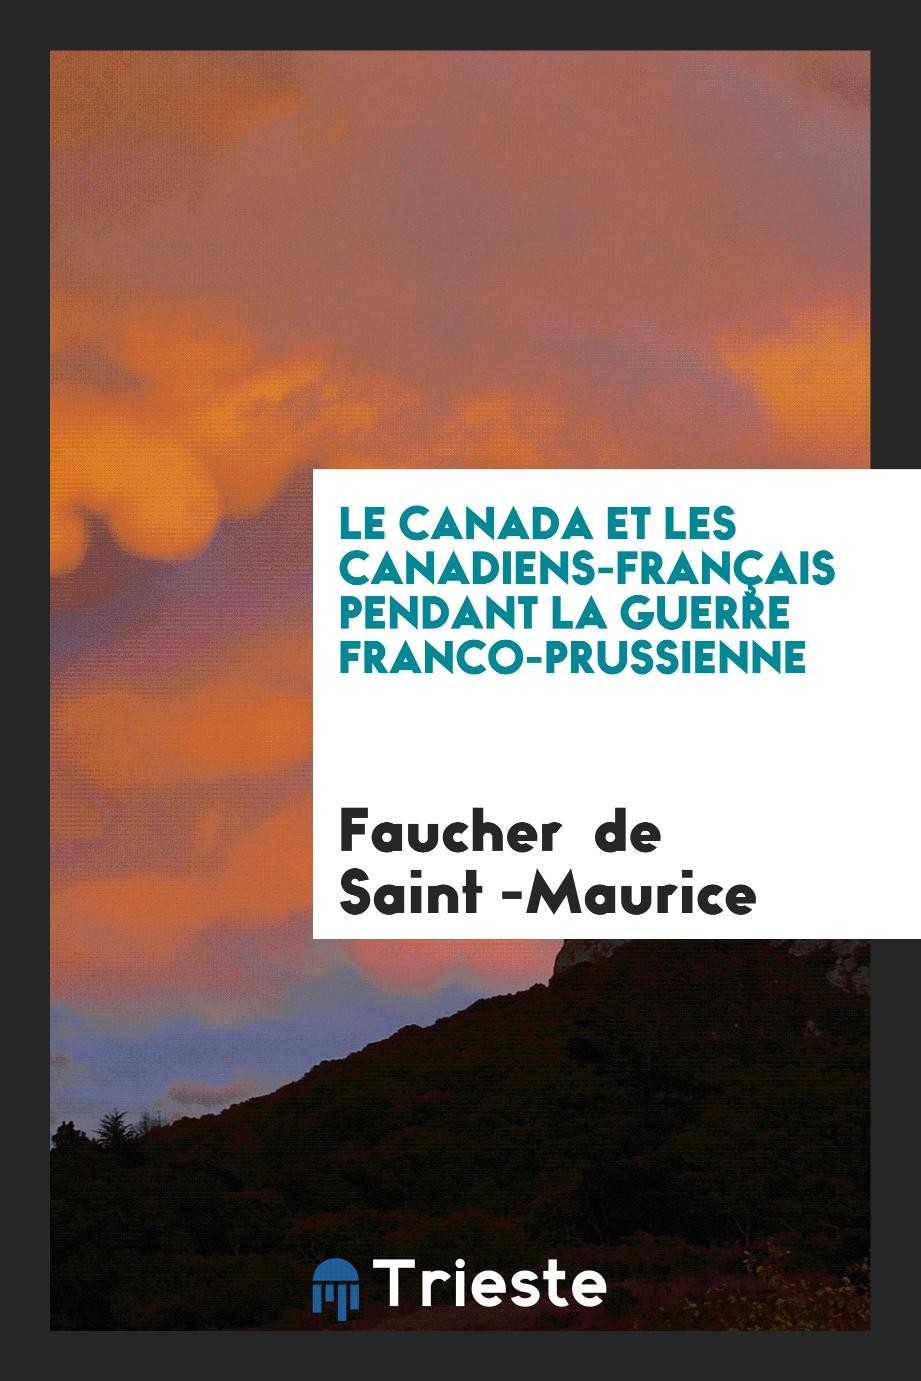 Le Canada et les Canadiens-Français Pendant la Guerre Franco-Prussienne